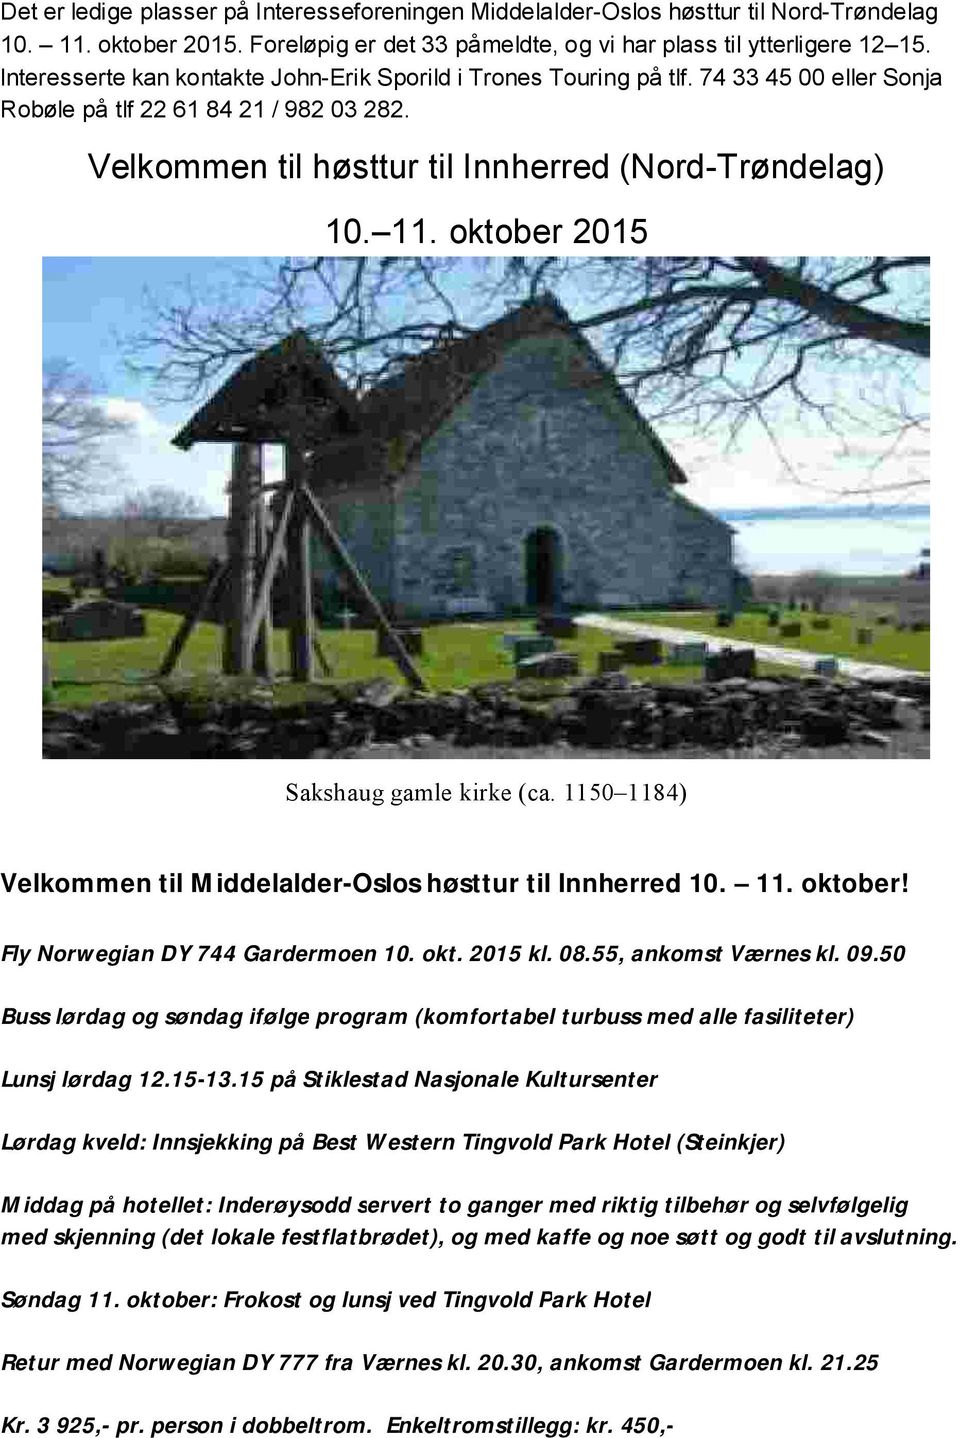 oktober 2015 Sakshaug gamle kirke (ca. 1150 1184) Velkommen til Middelalder-Oslos høsttur til Innherred 10. 11. oktober! Fly Norwegian DY 744 Gardermoen 10. okt. 2015 kl. 08.55, ankomst Værnes kl. 09.